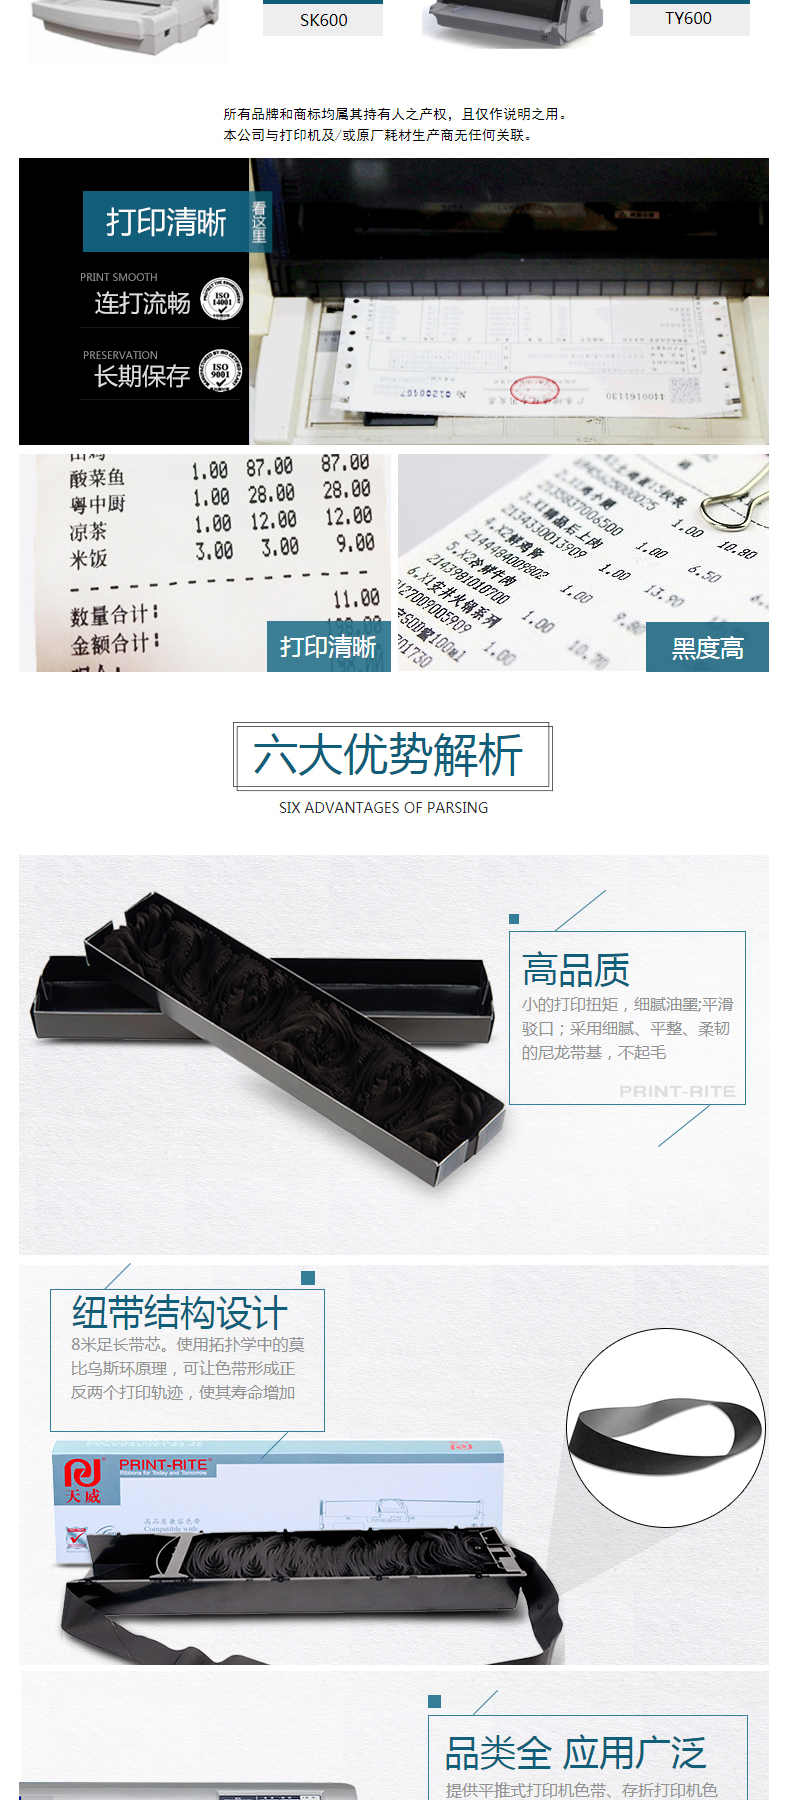 天威 PRINT-RITE 色带框/色带架 DS-5400H/2100H RFD117BPRJ 21m*12.7mm (黑色) (10盒起订)